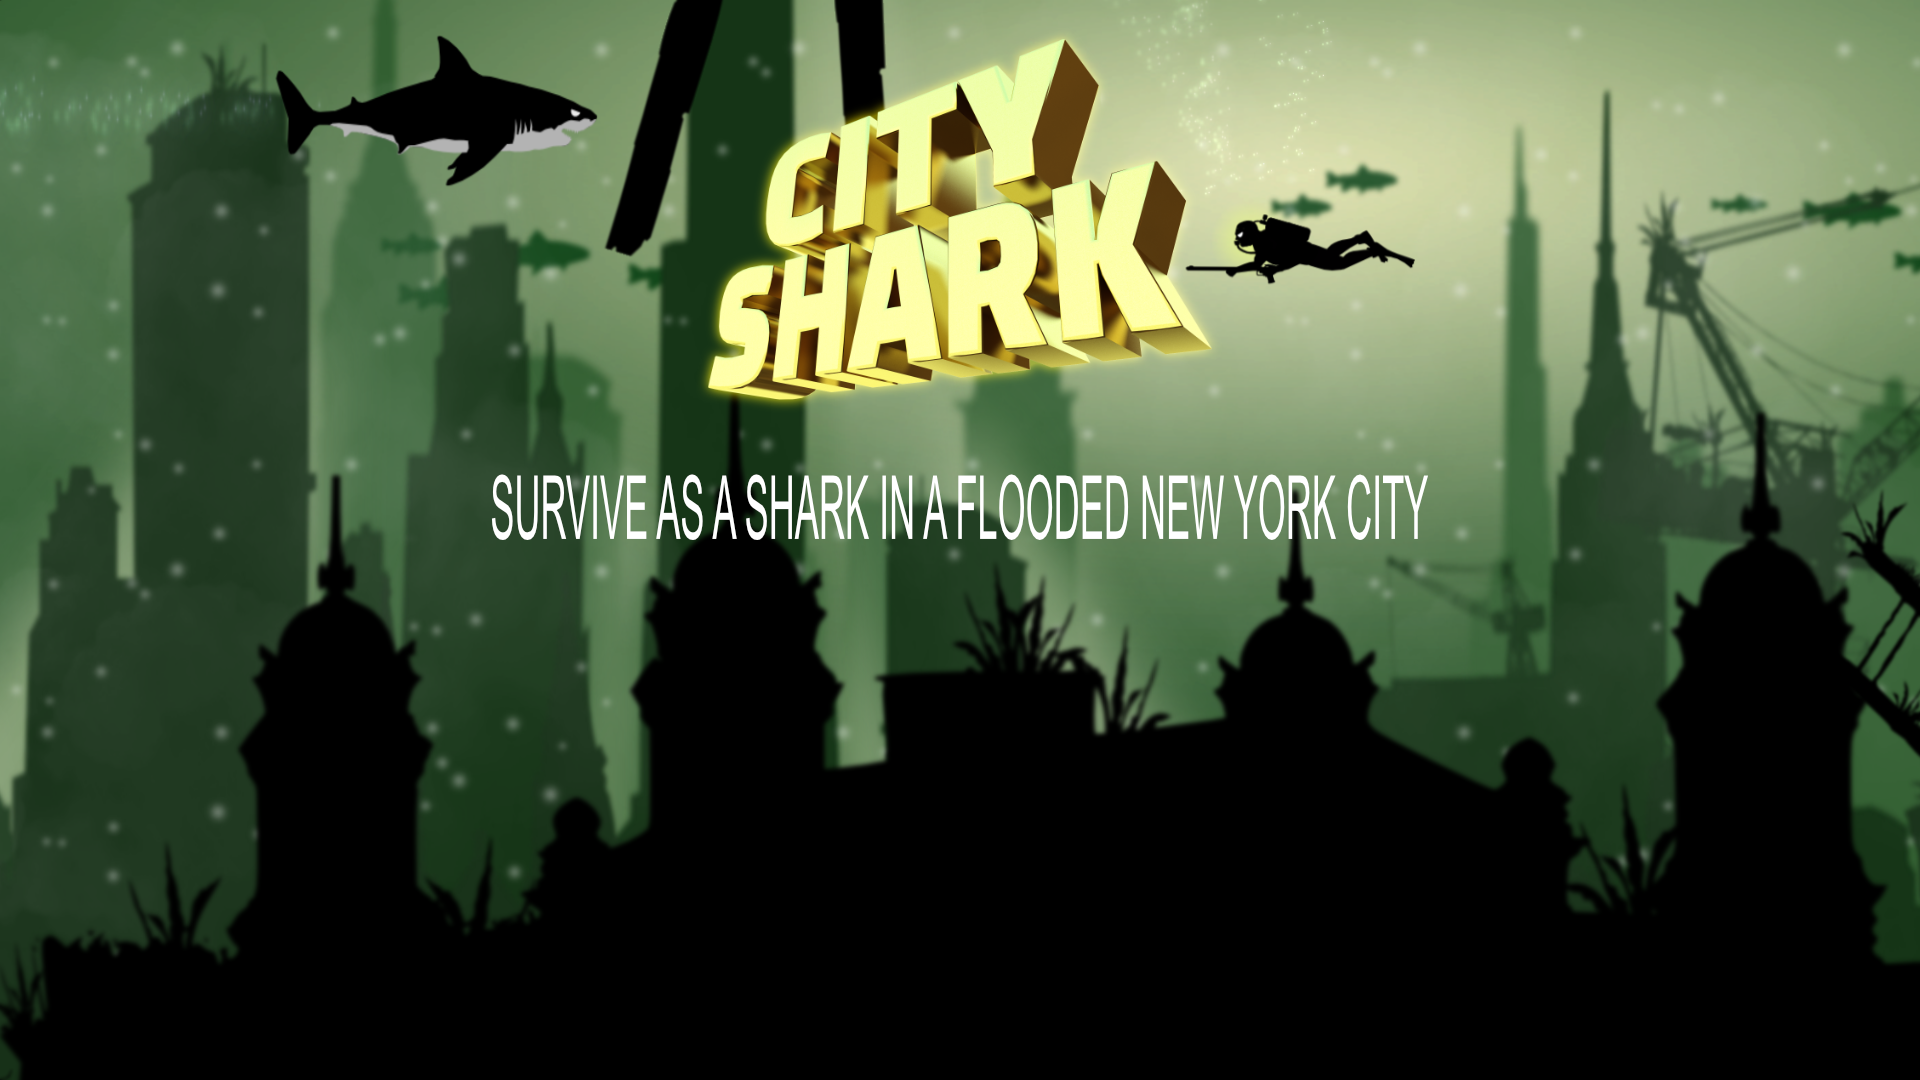 City Shark has been released